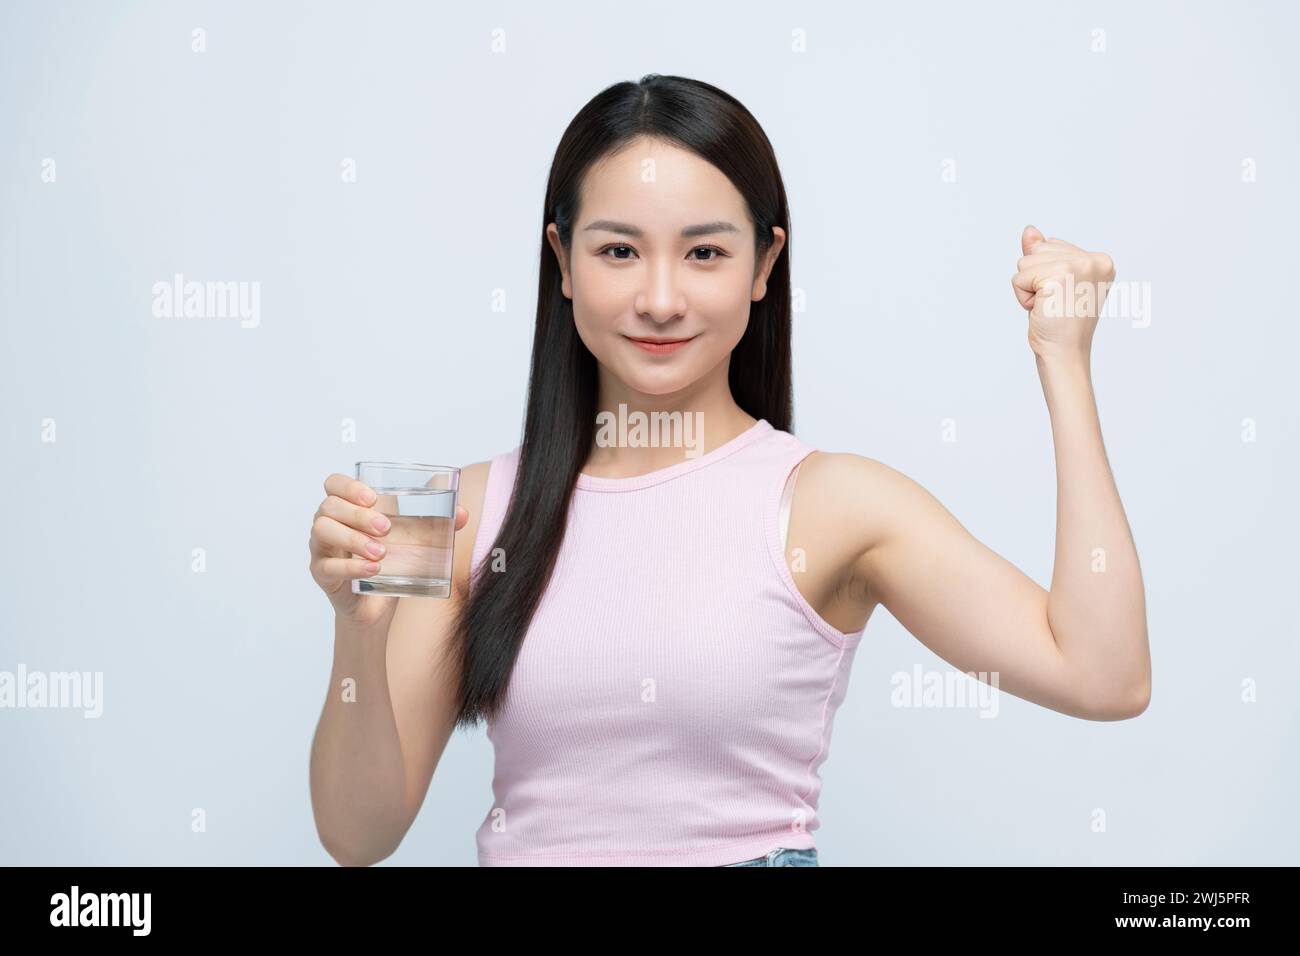 Sorridente giovane donna asiatica che regge un bicchiere di acqua pulita con il braccio sollevato su bianco Foto Stock